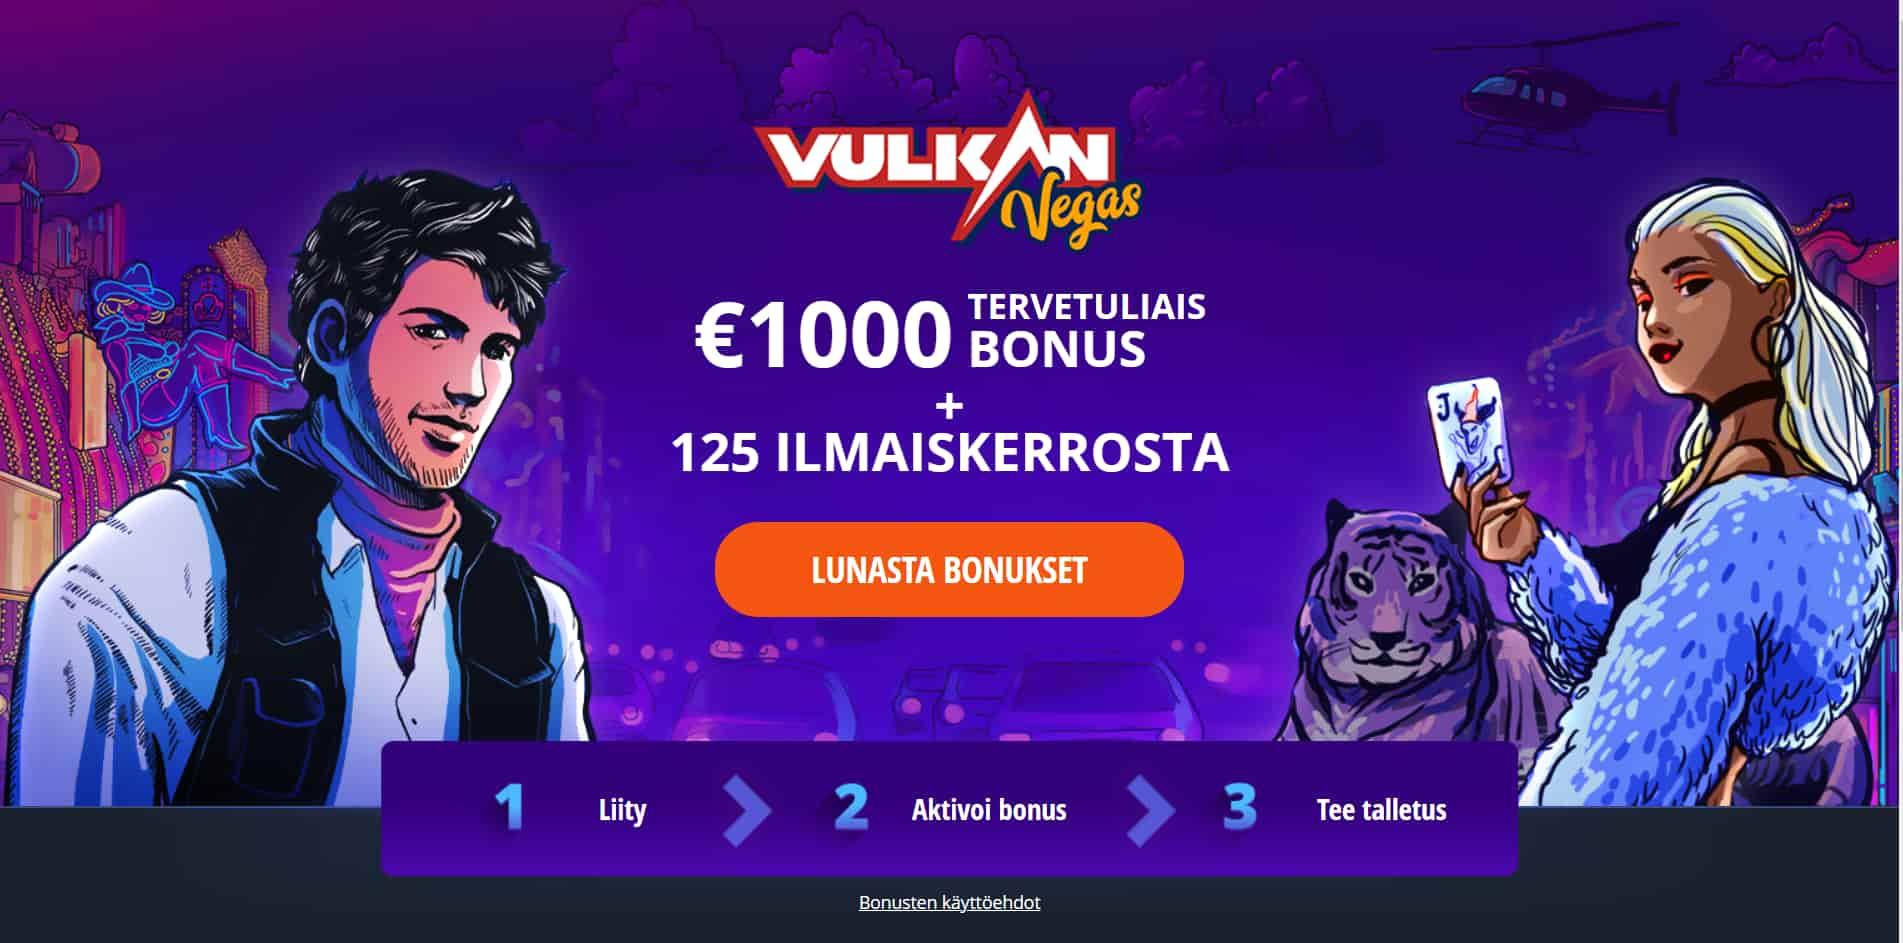 Vulkan Vegas casino homepage